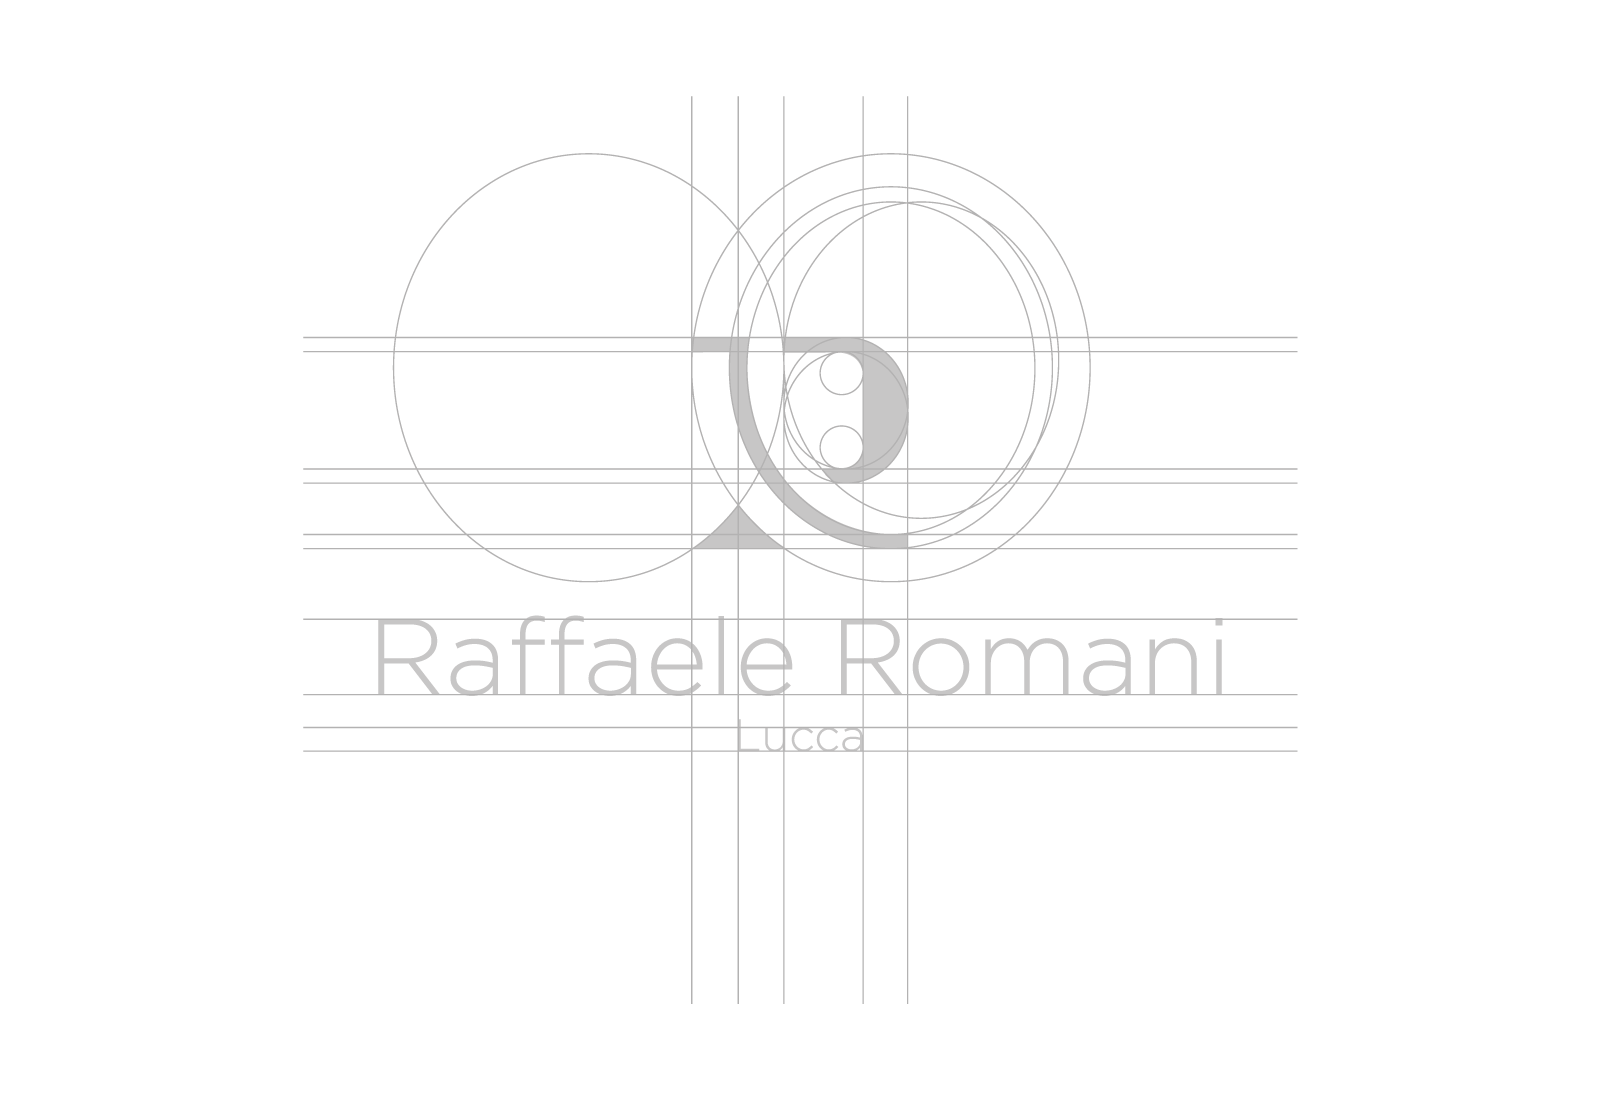 Logo e brand identity di Raffaele Romani realizzato da SEBA! grafico di Gravellona Toce nel VCO della griglia di costruzione